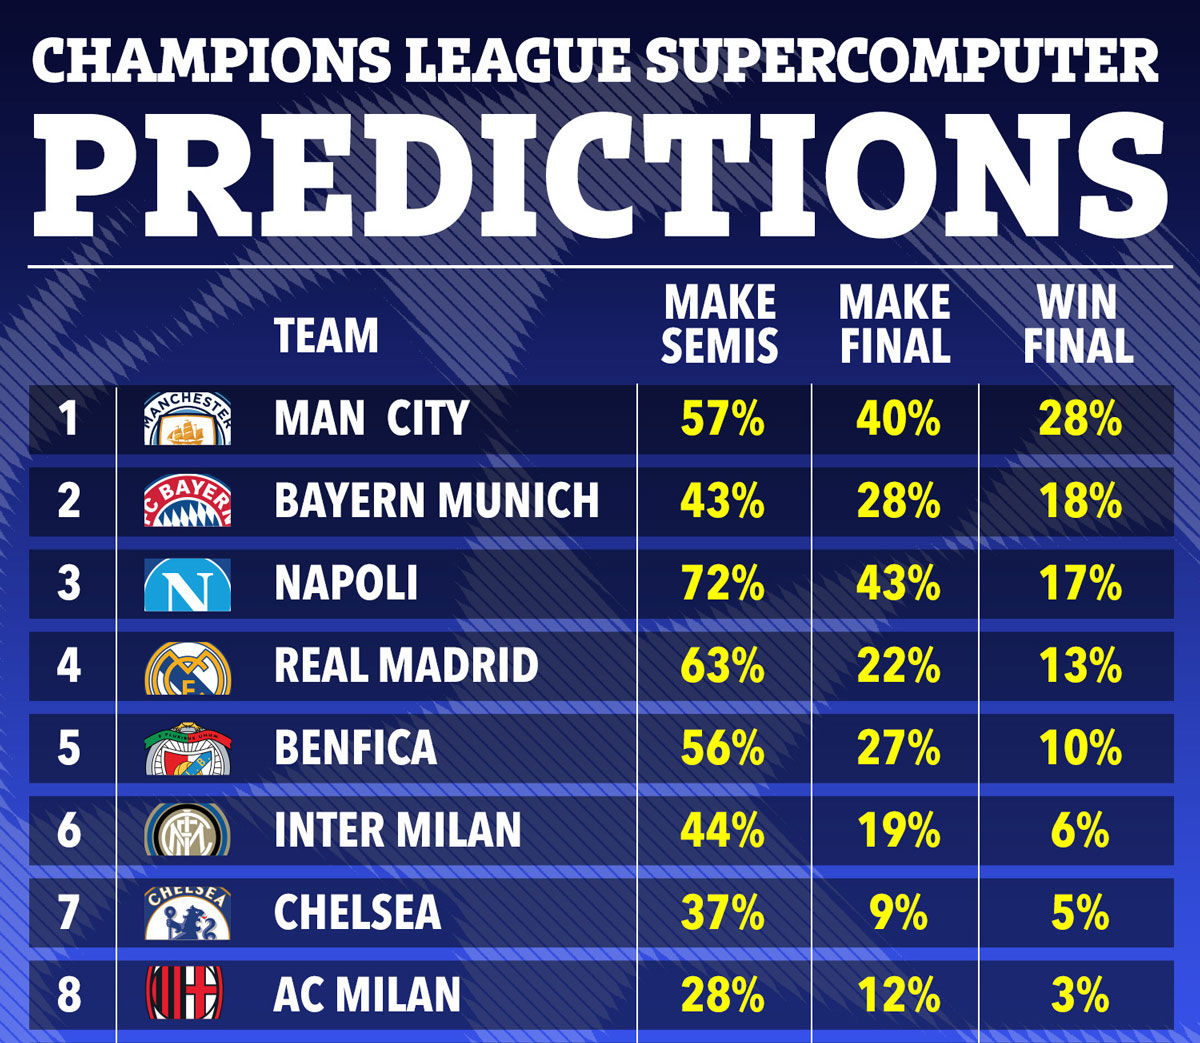 Siêu máy tính dự đoán Man City vô địch Champions League 2022/23 - Ảnh 1.